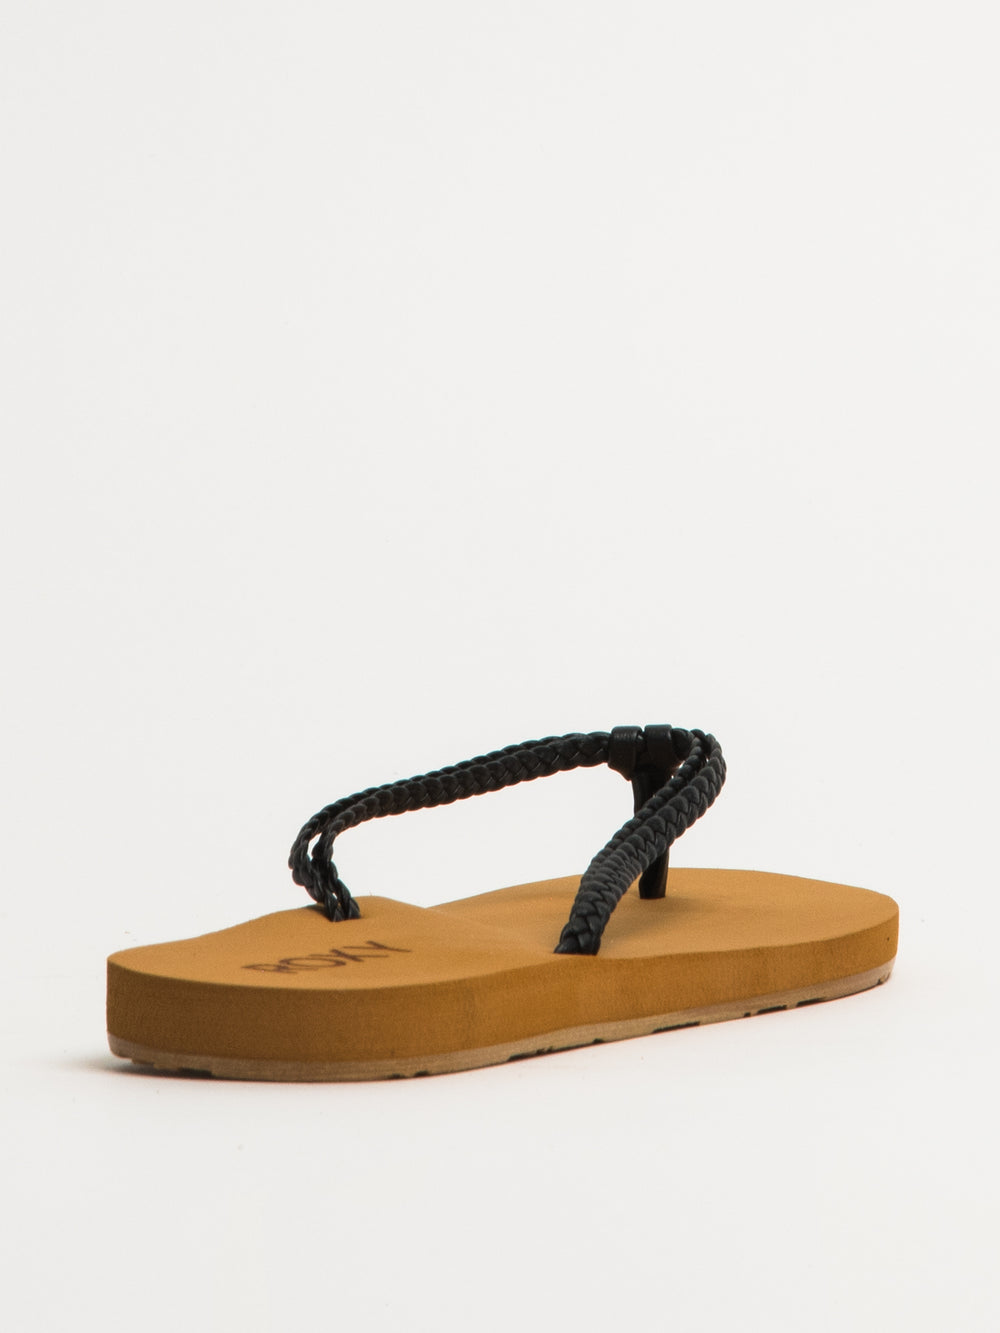 Roxy Costas Sandals - Sandals Women's, Buy online